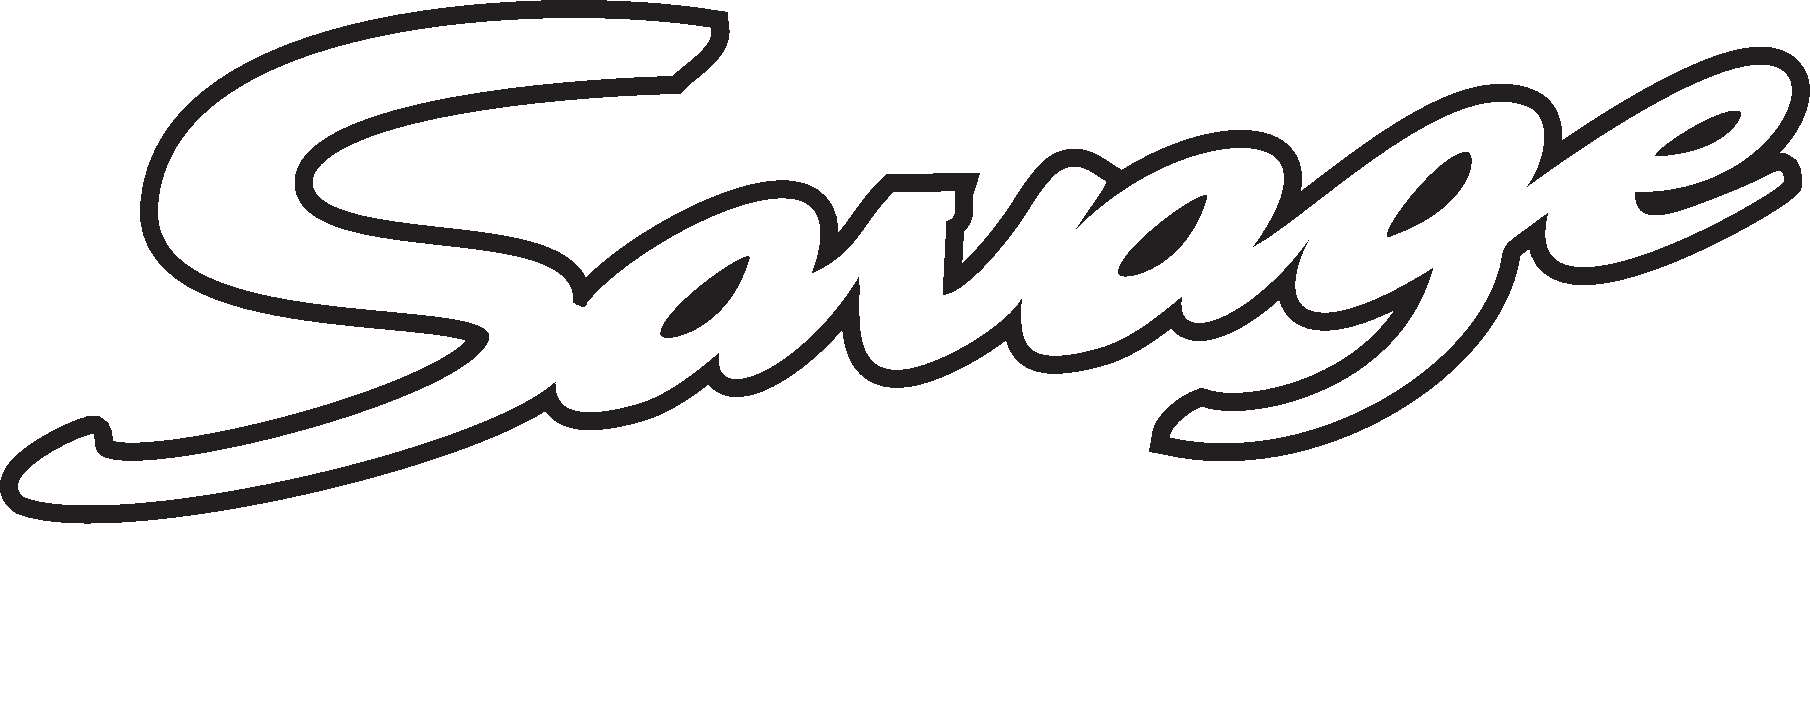 savageaircraft.cz